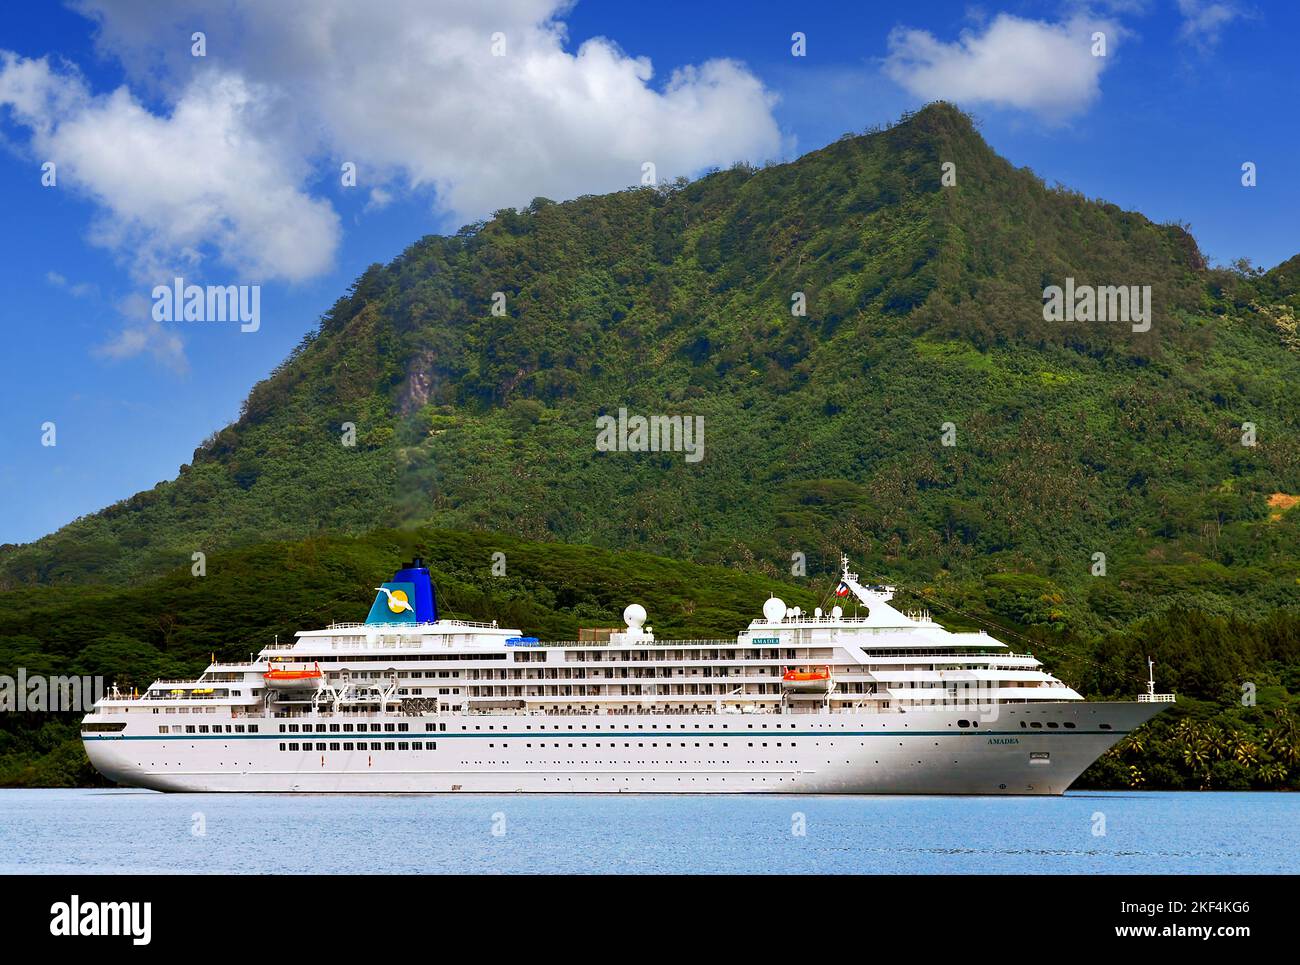 Das Kreuzgfahrtschiff MS Amadea im Hafen von Huahine, Südsee, Französisch Polynesien, Inseln unter dem Winde, Stock Photo